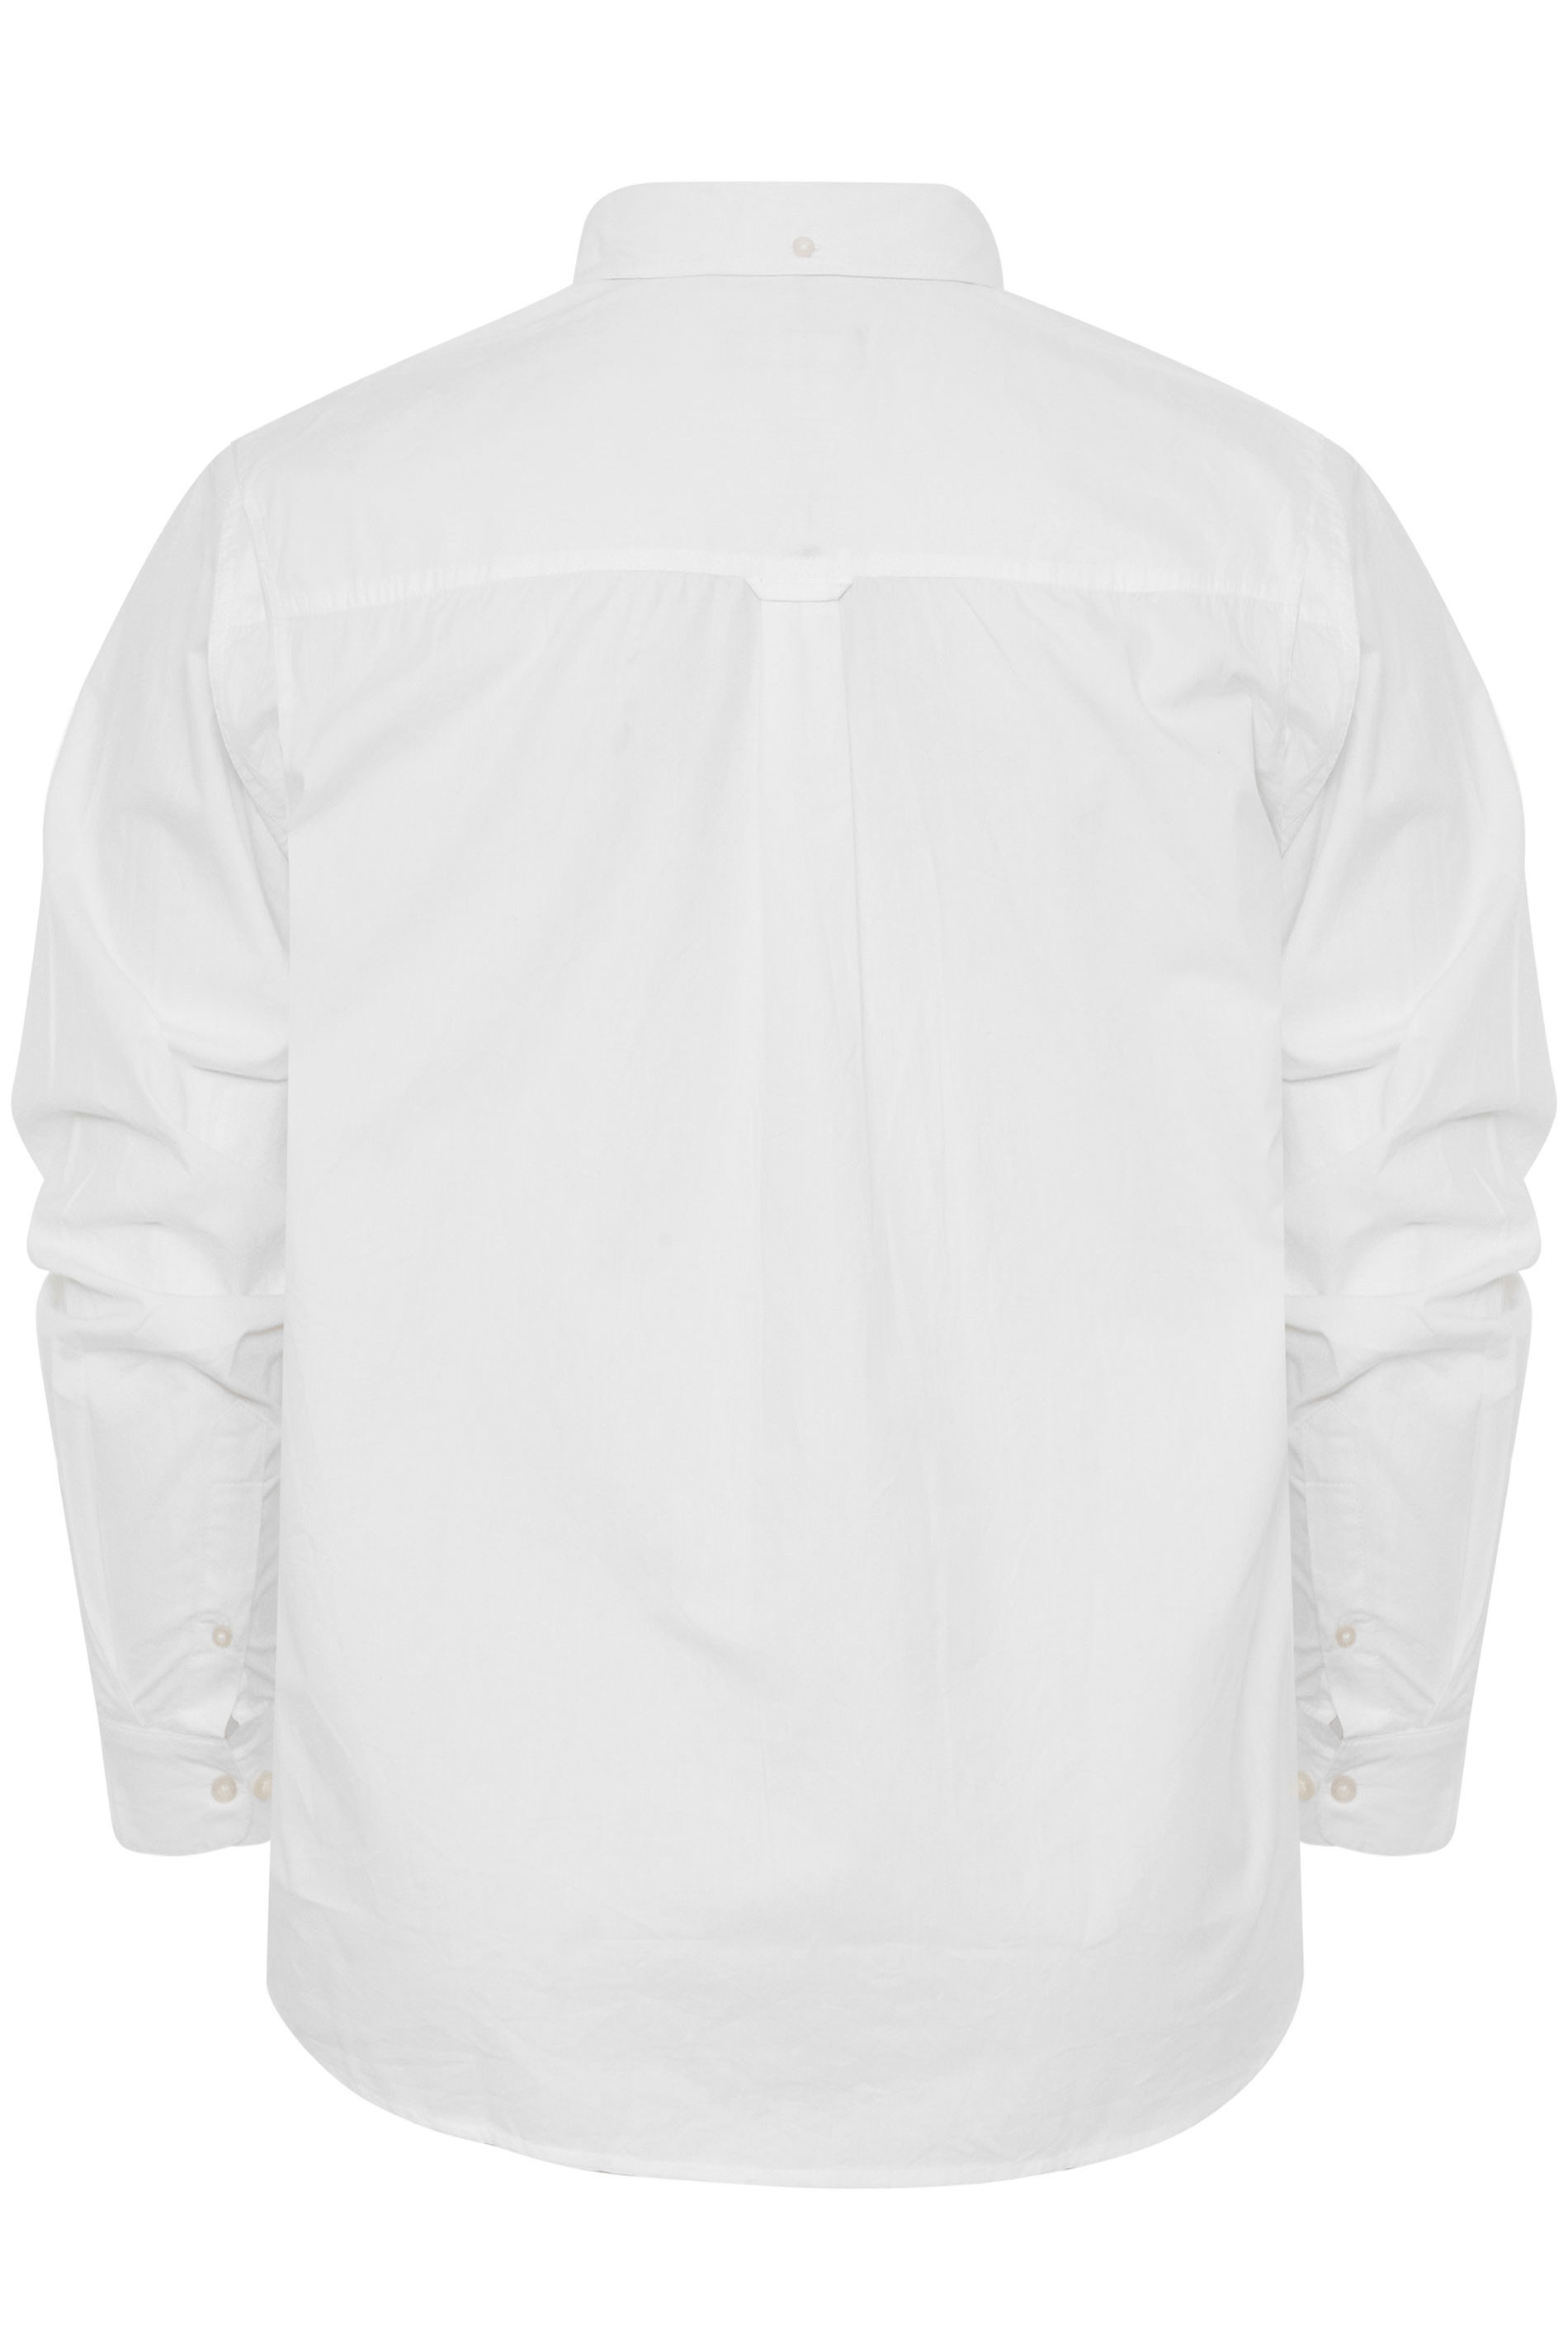 BadRhino White Cotton Poplin Long Sleeve Shirt | BadRhino 3